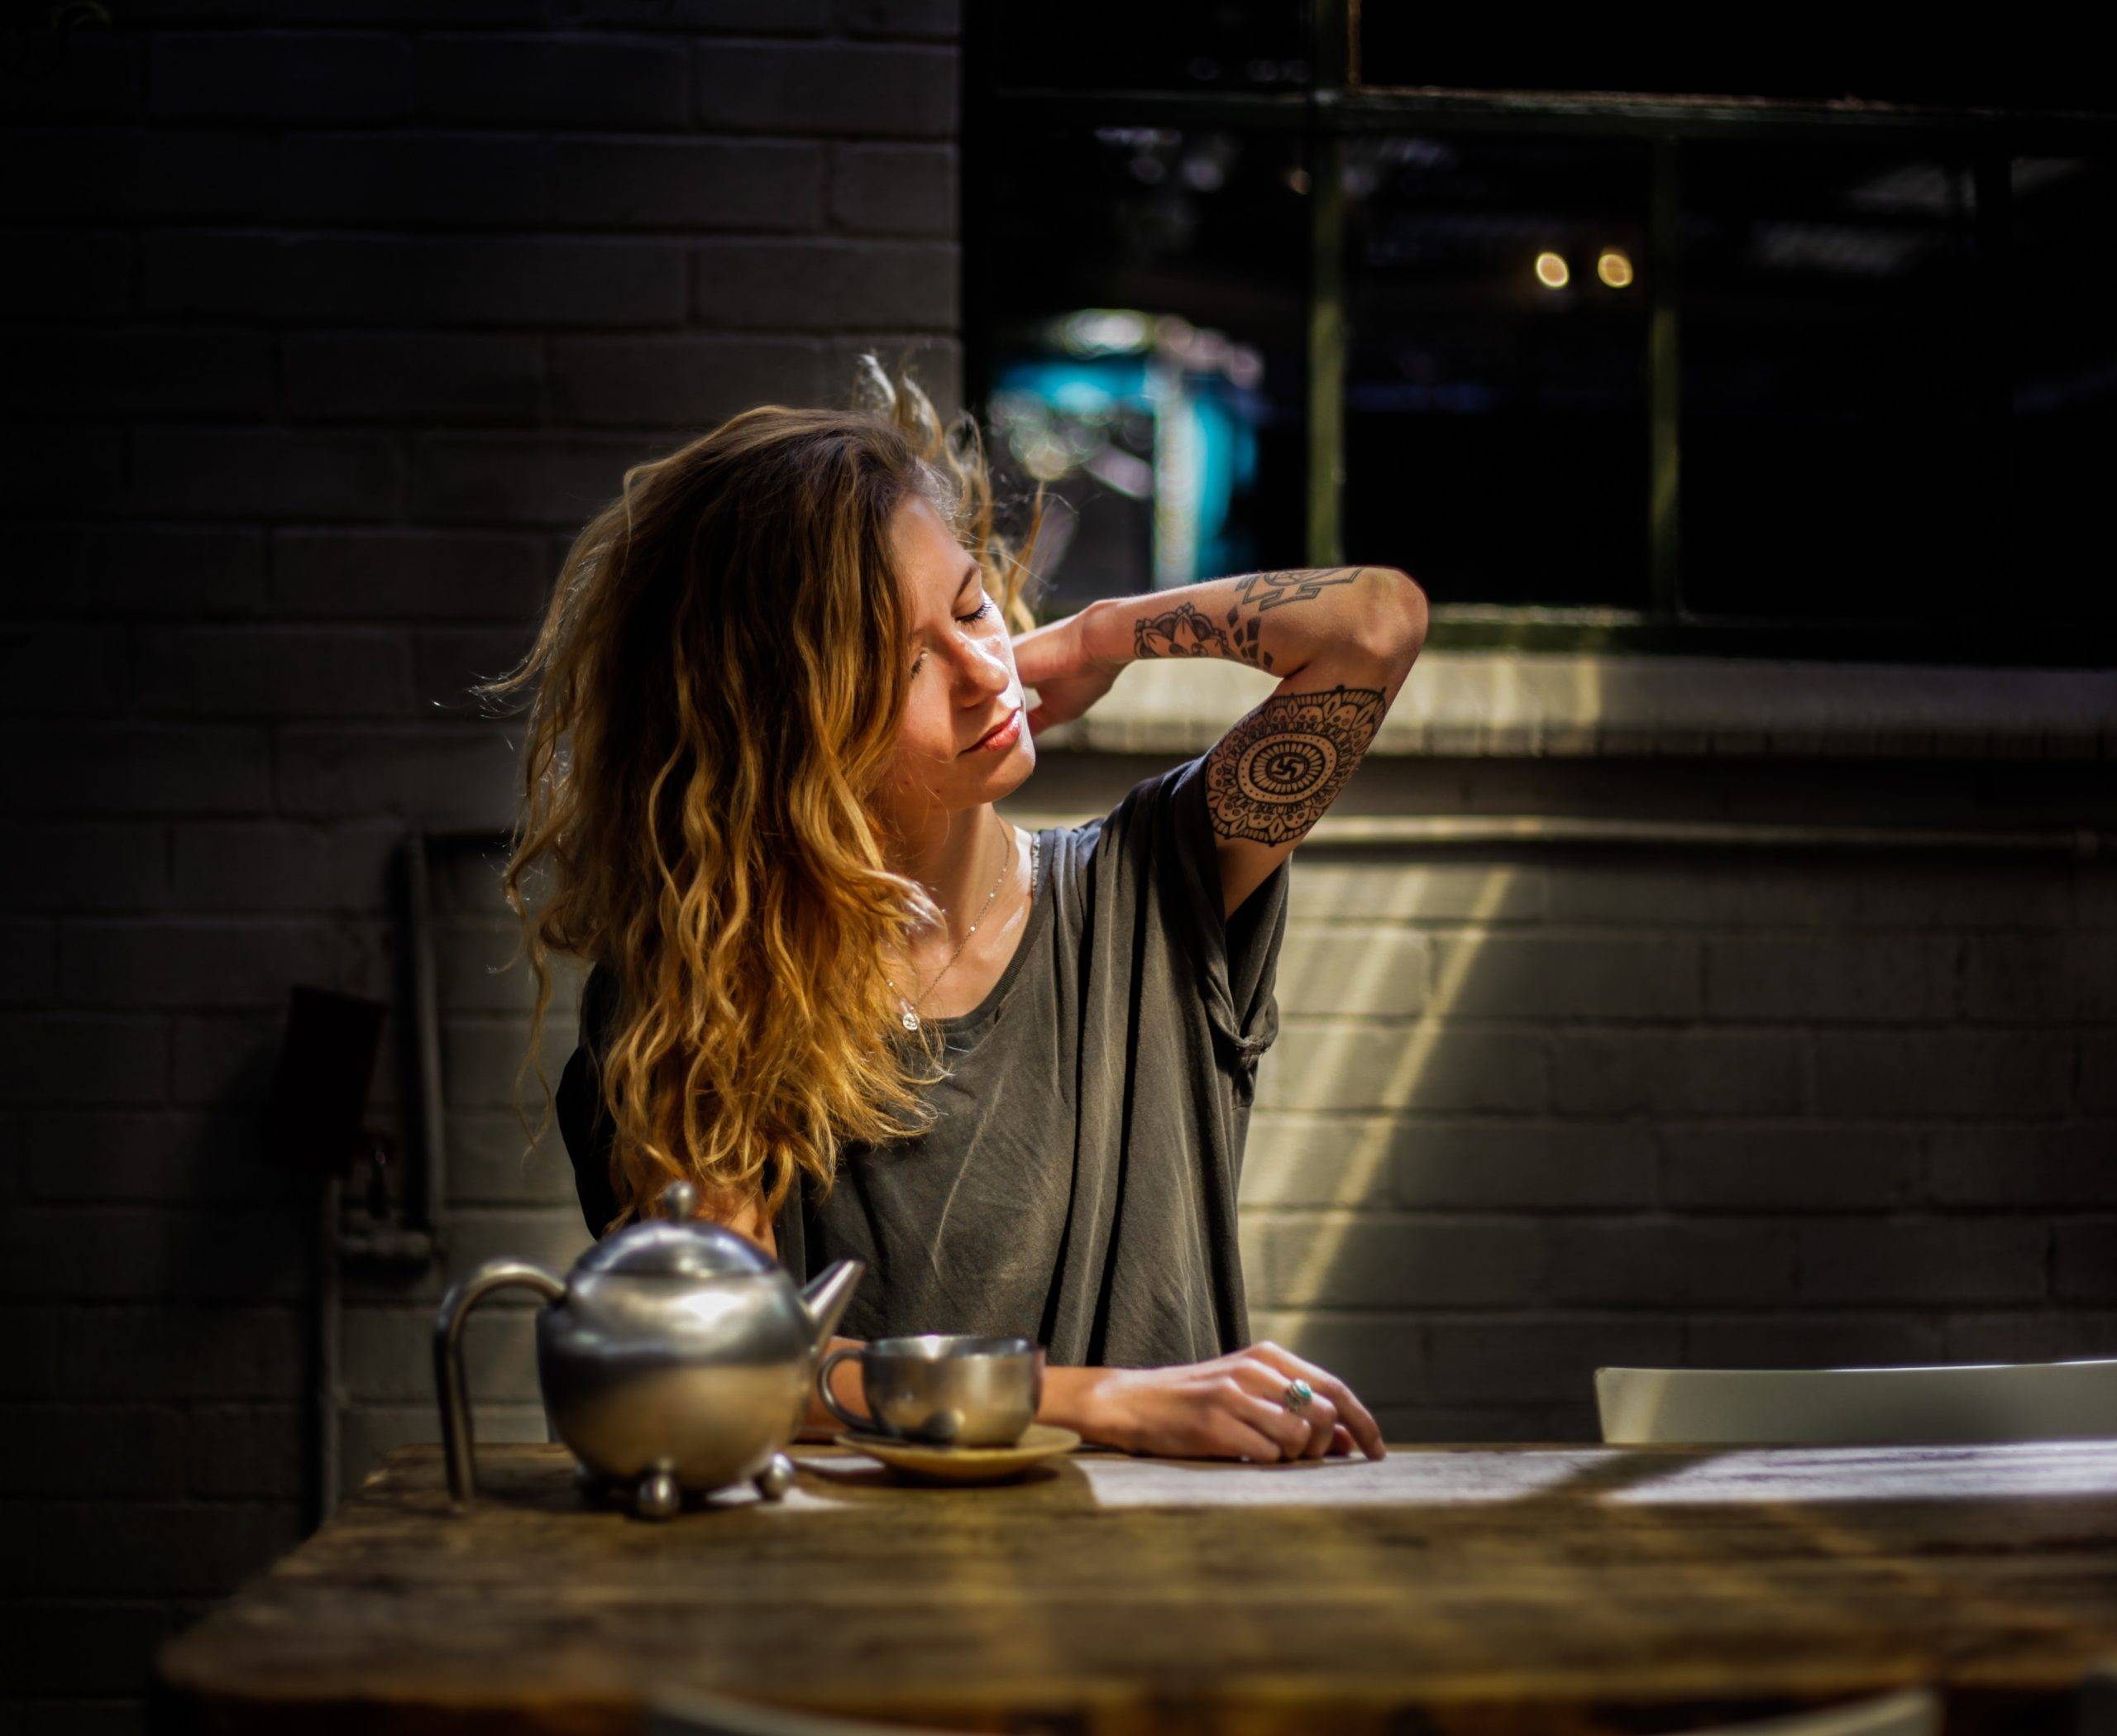 Kvinna sitter vid köksbord i mörkret på kvällen med en tekanna och kopp framför sig på bordet. Kvinnan har sin ena arm uppsträckt som har tatueringar på sig.